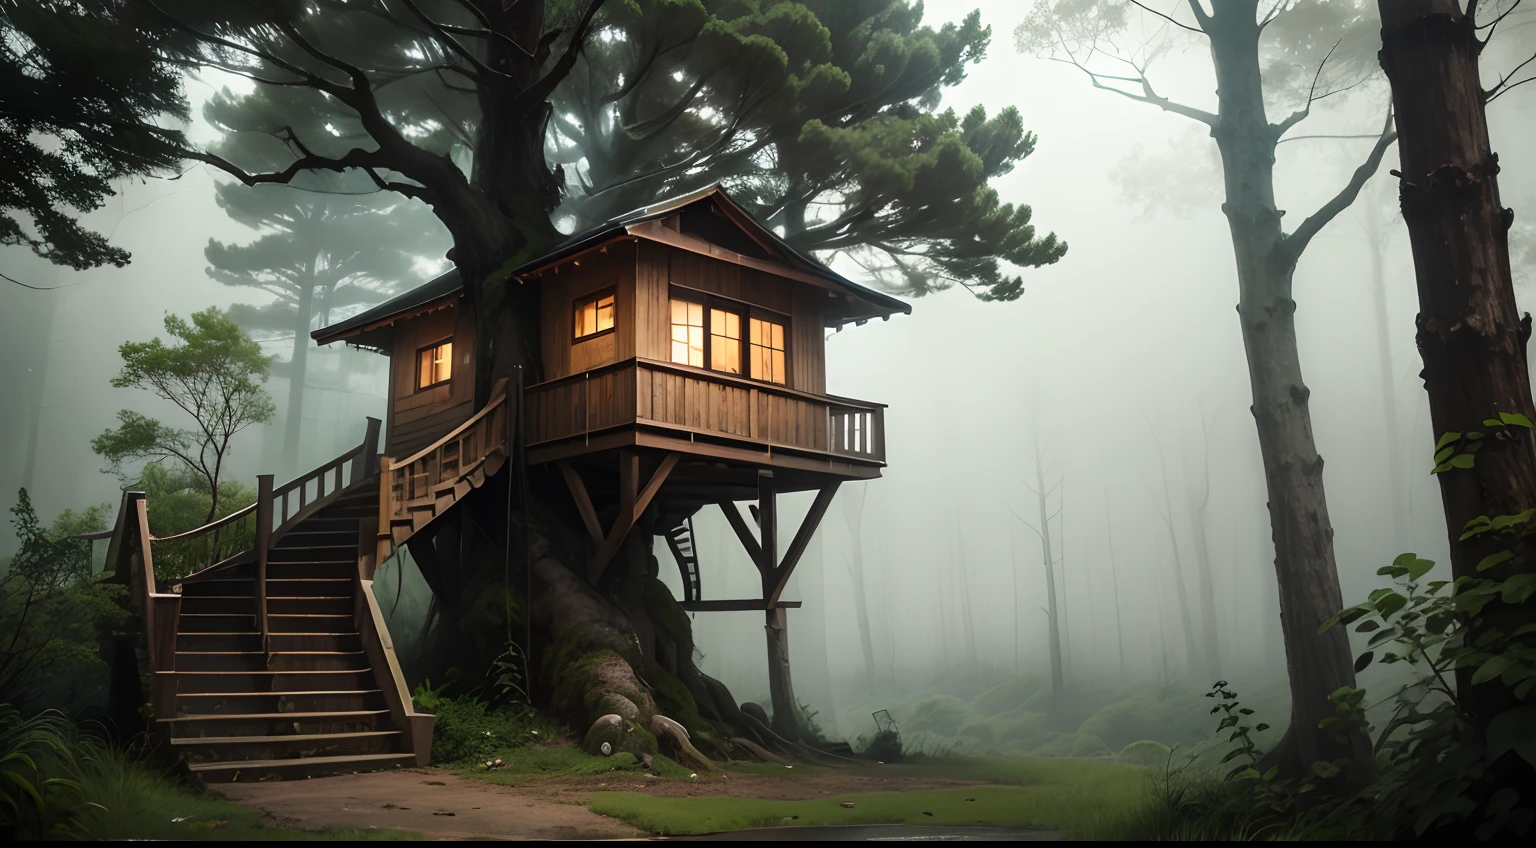 Cielos nublados y fuerte tormenta en el bosque, Una casa en el árbol con escaleras., Vegetación húmeda, y algunos árboles alrededor